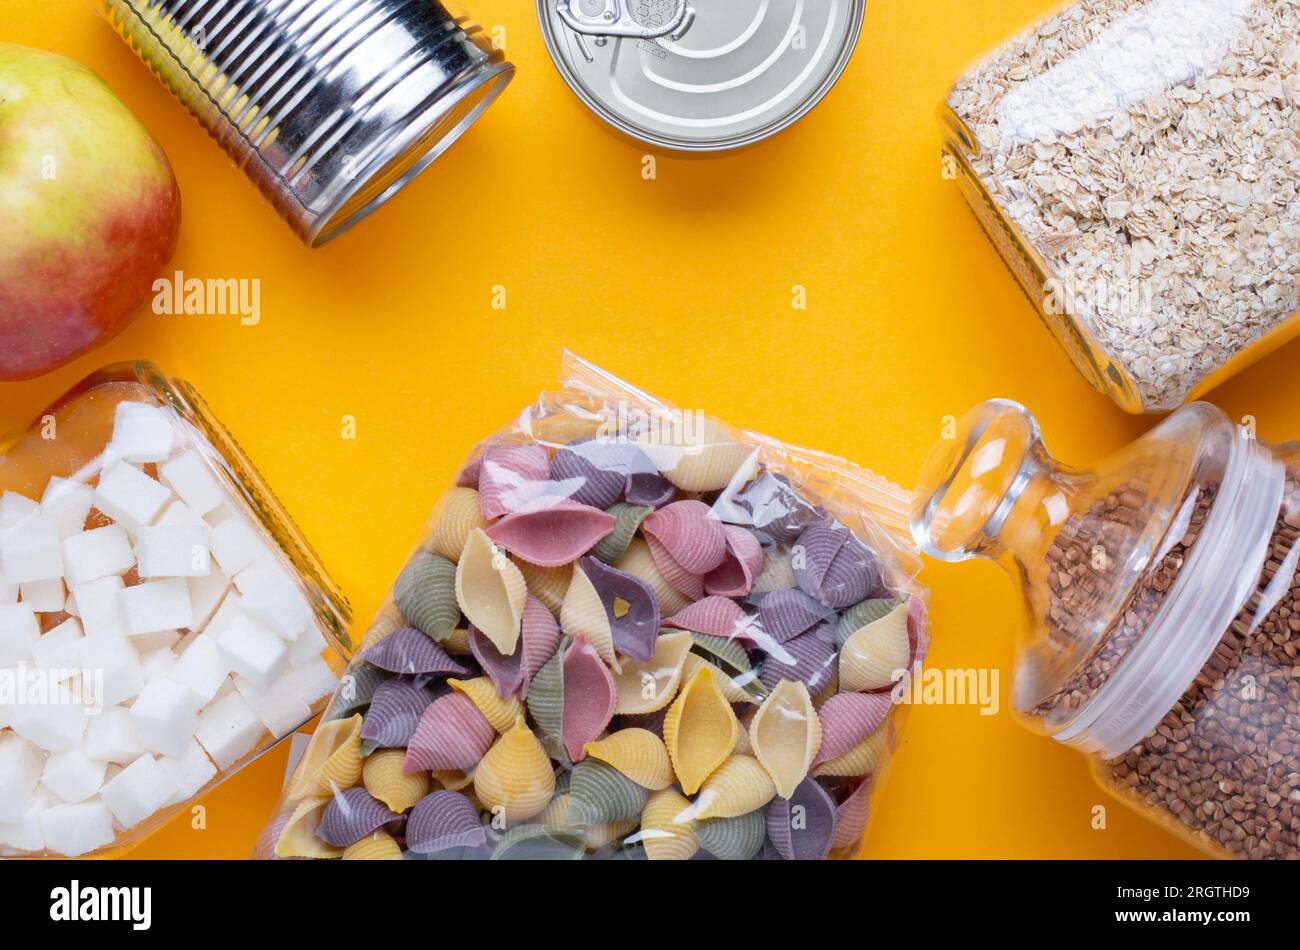 Spendet Lebensmittel in Dosen auf gelbem Tischhintergrund Stockfoto